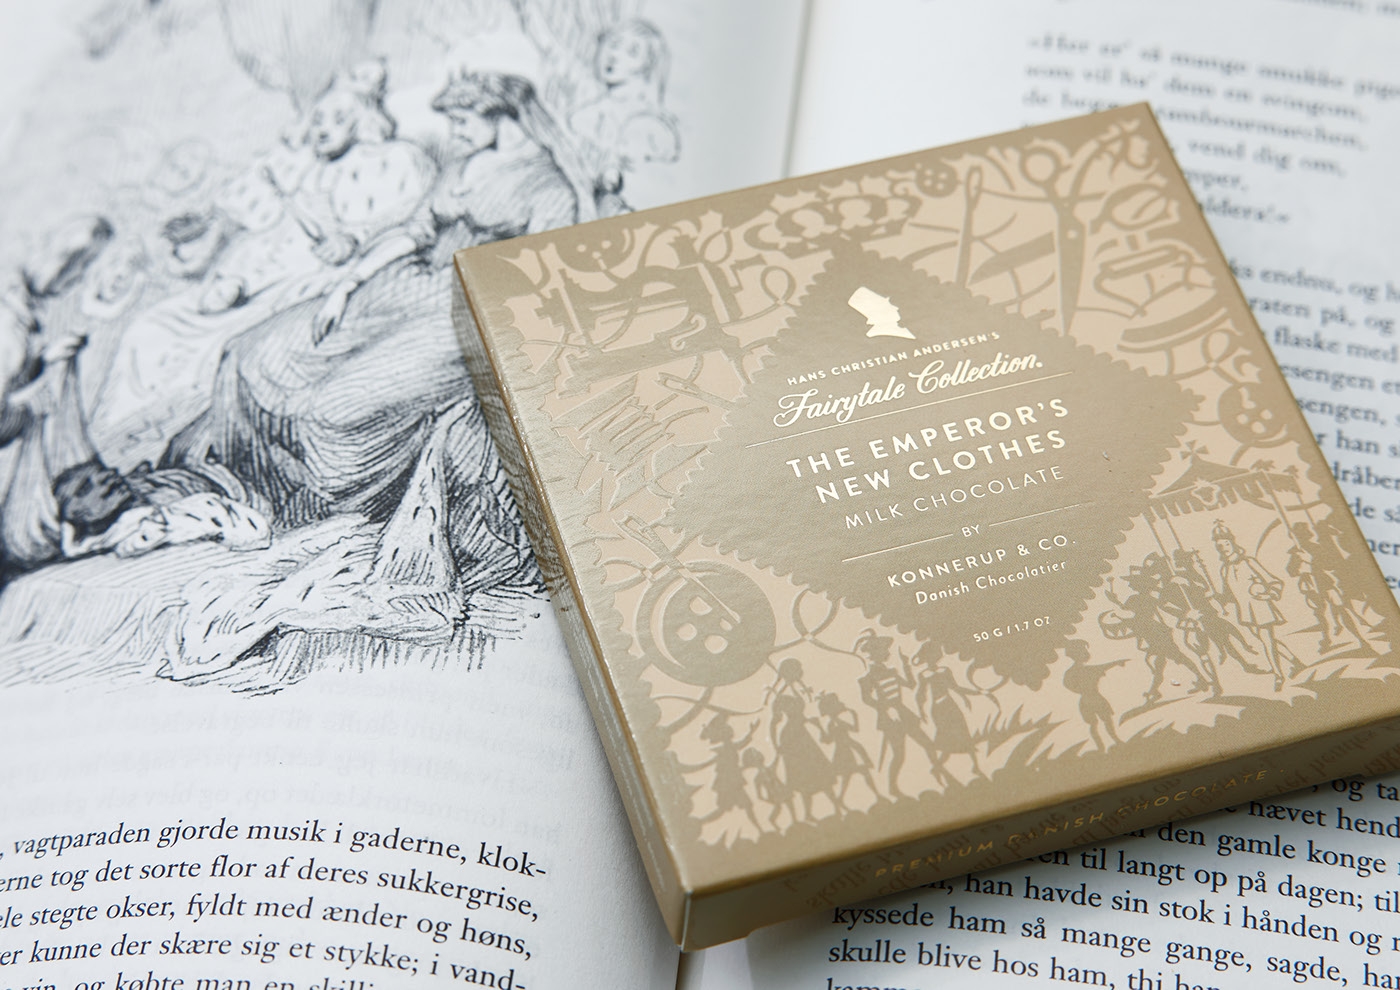 安徒生童话故事创新巧克力包装设计-杭州食品包装设计